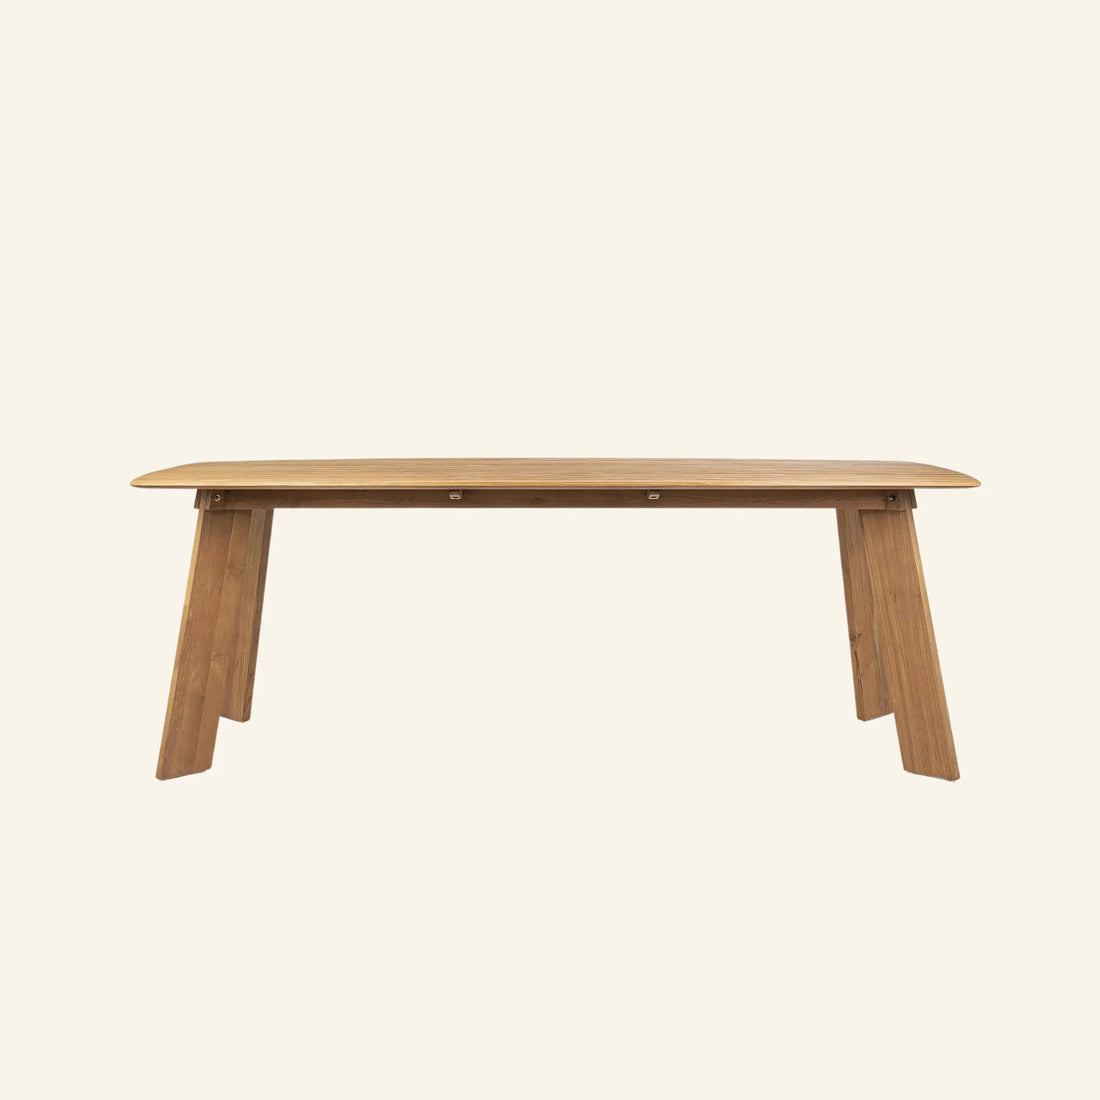 Table de cuisine en bois massif de teck recyclé, modèle Grace de la collection exclusive CRUSOË X dBodhi